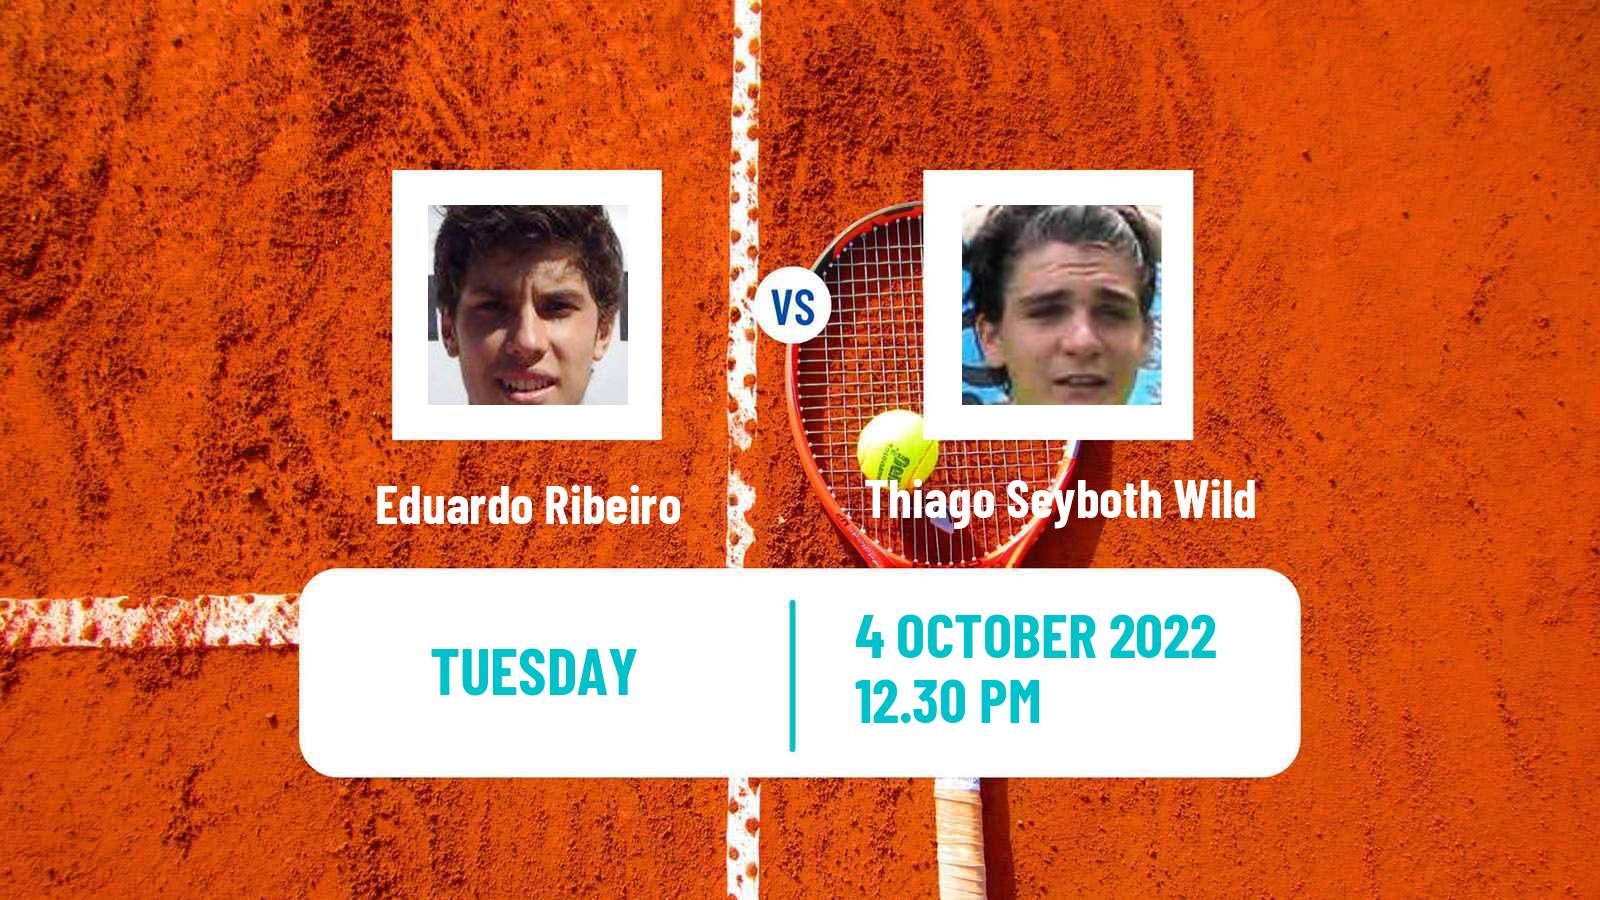 Tennis ATP Challenger Eduardo Ribeiro - Thiago Seyboth Wild